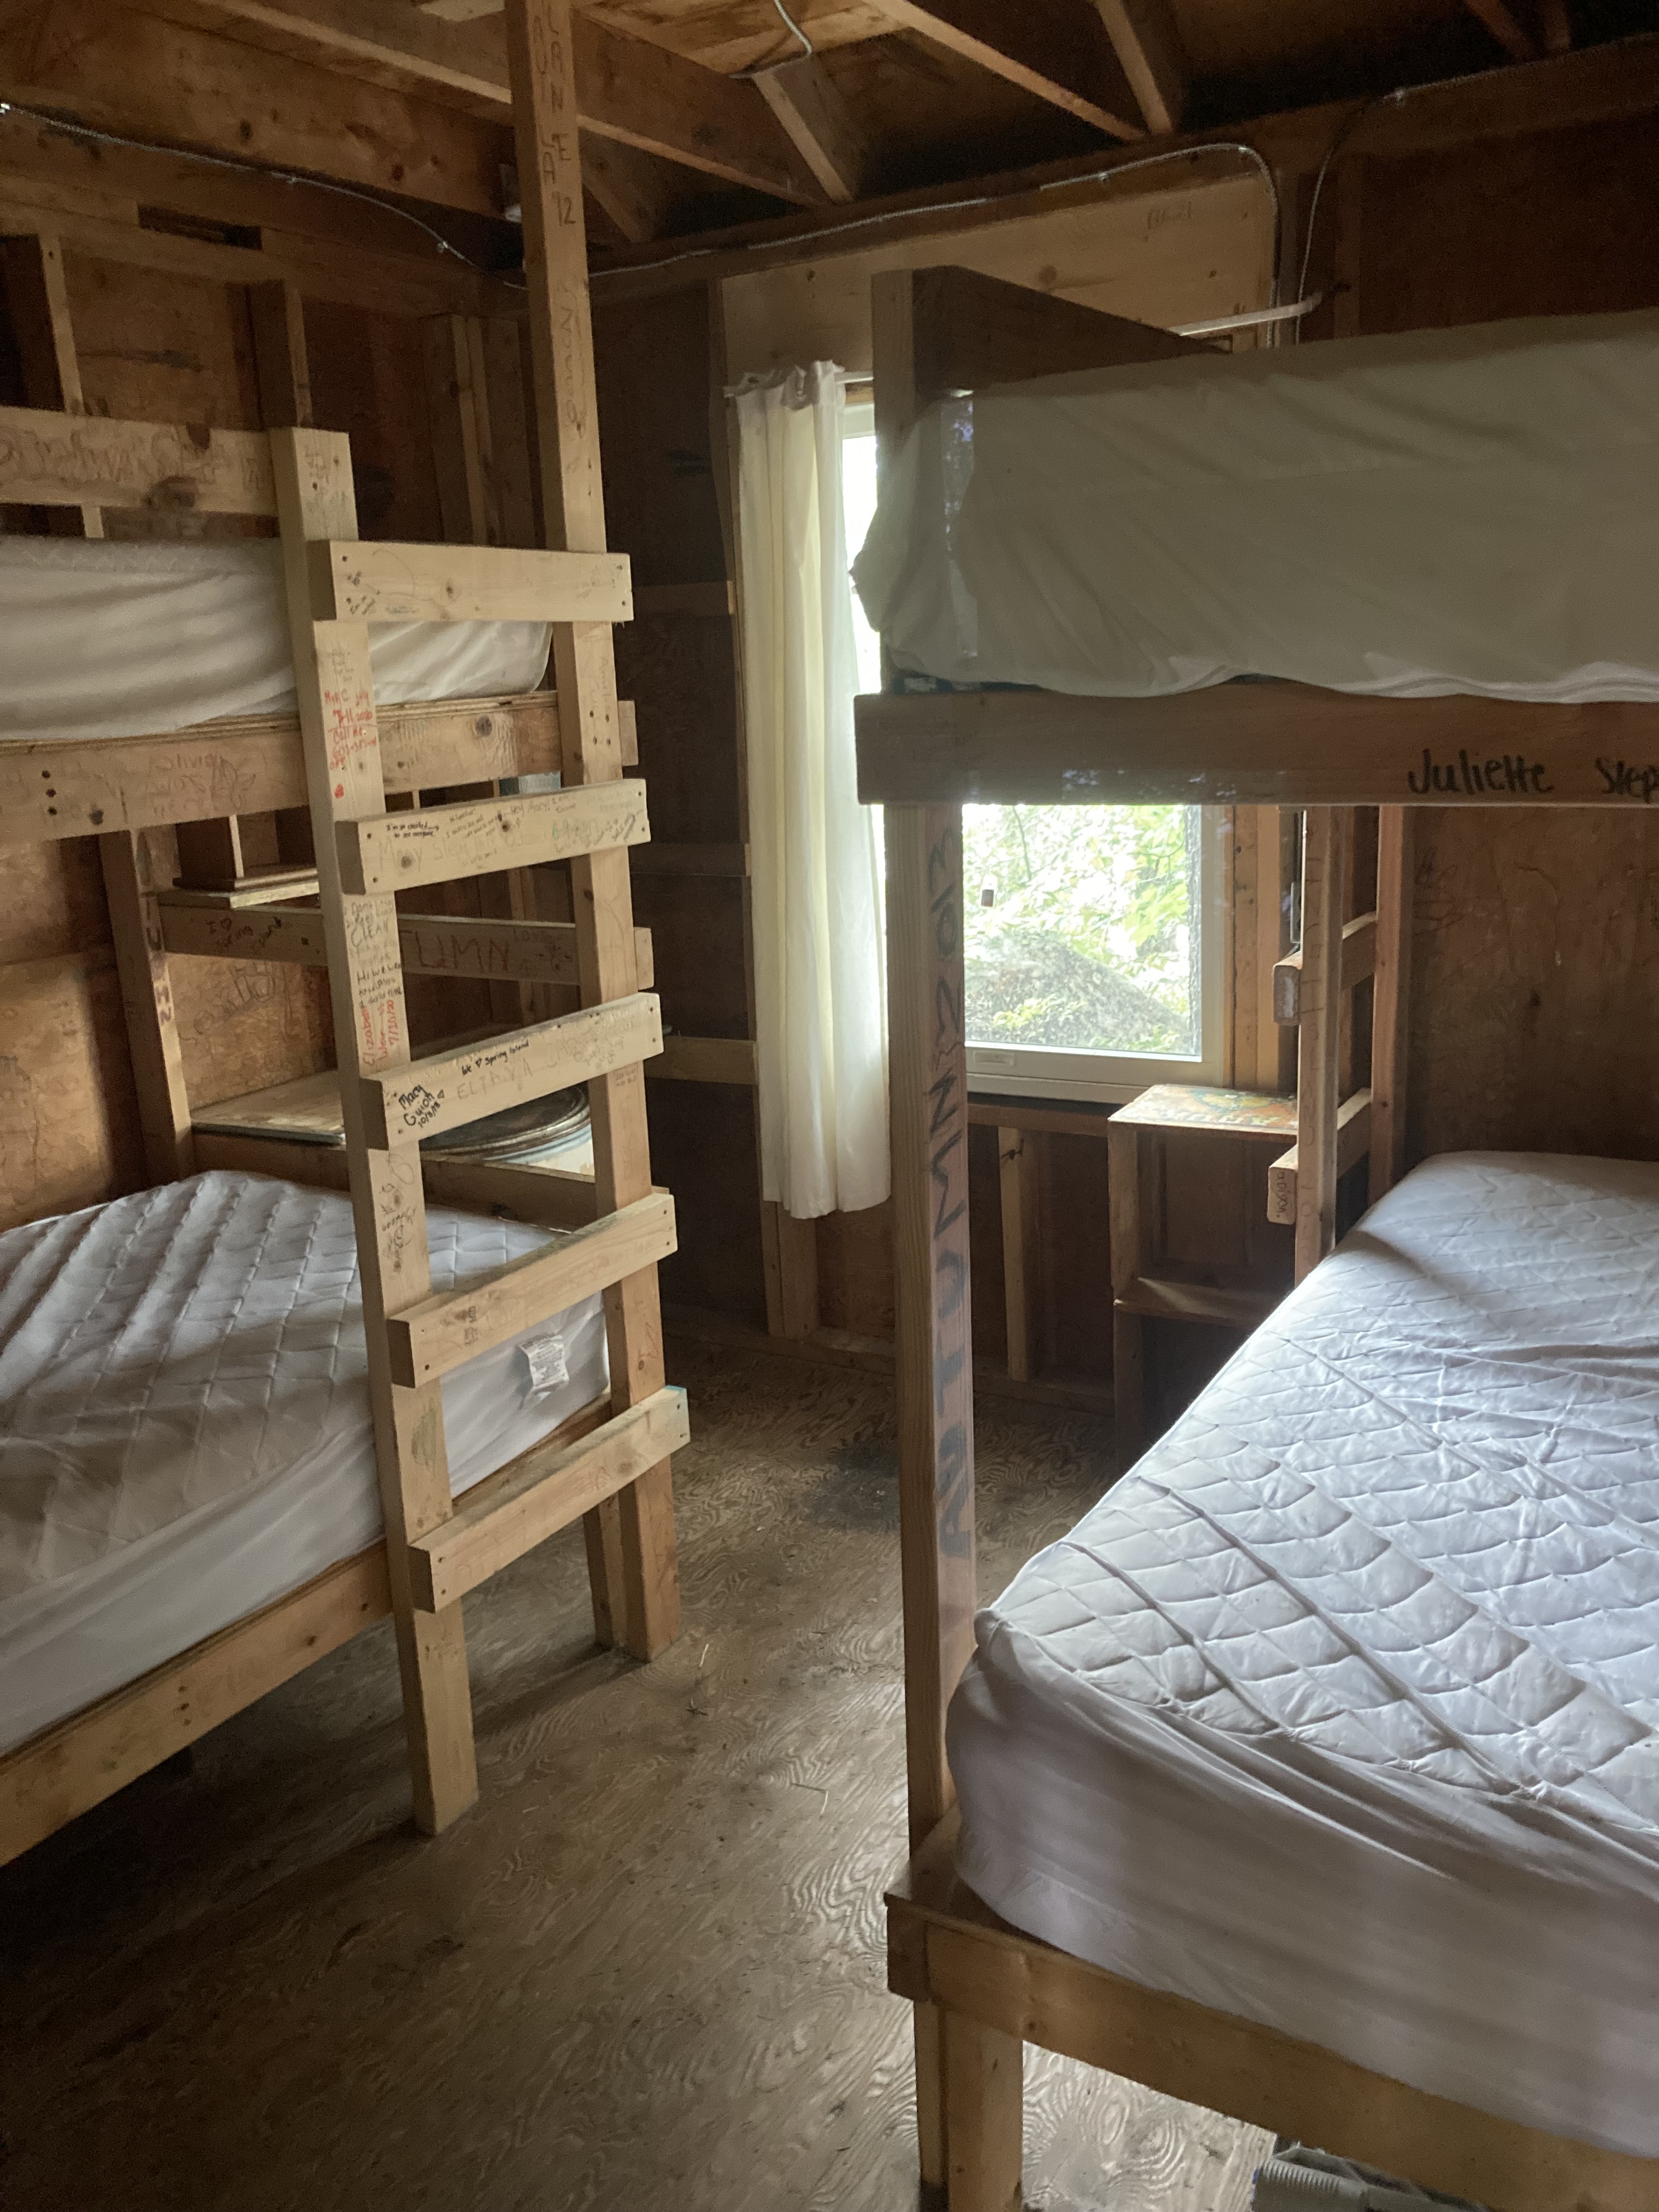 Spring Island - Sleeping Cabin room - July, 2022